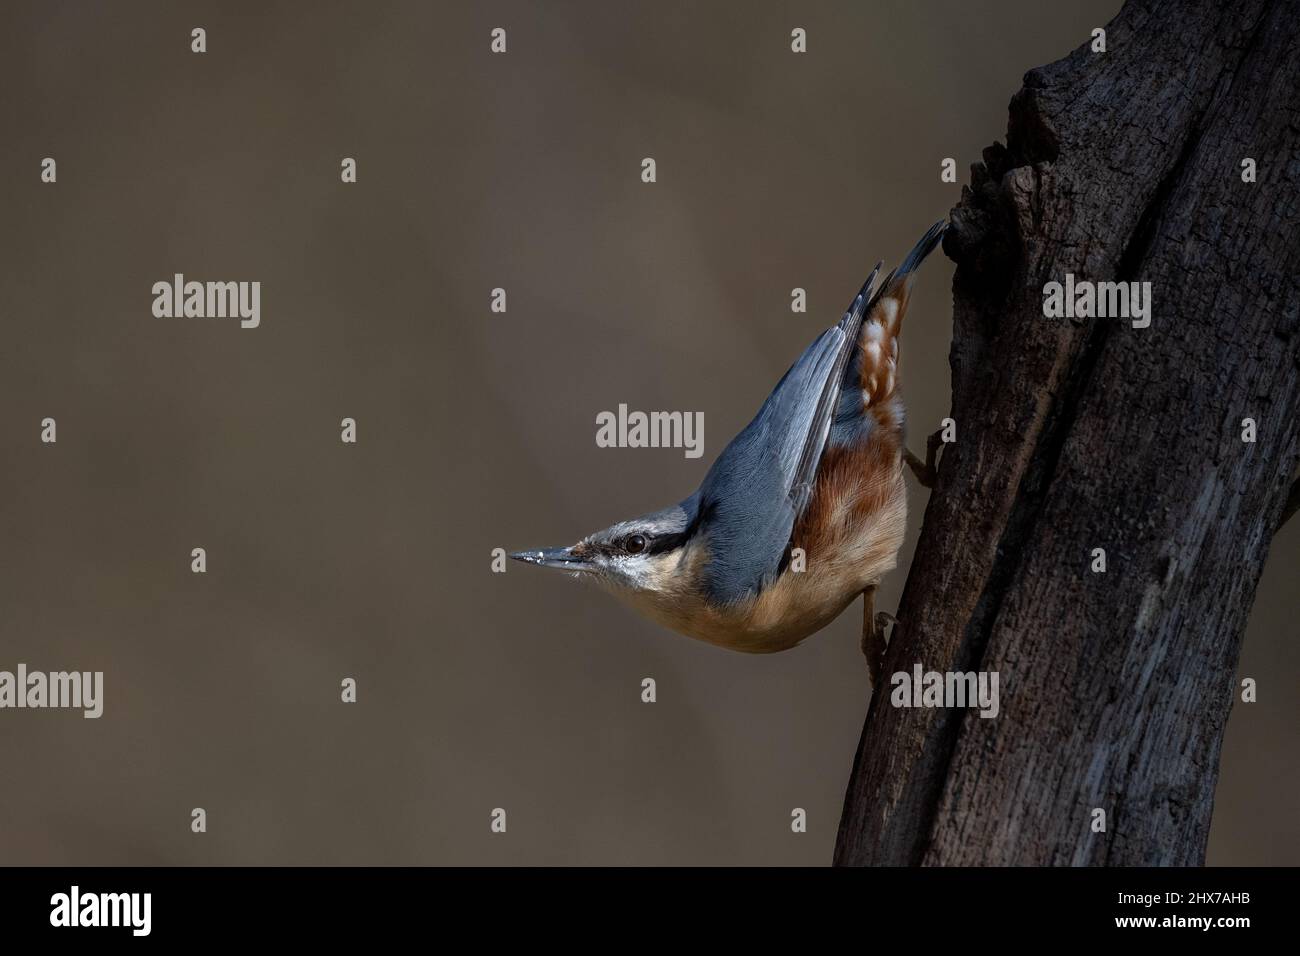 Un peto eurasiático (Sitta europaea) golpea una postura típica hacia abajo en la rama de un árbol Foto de stock